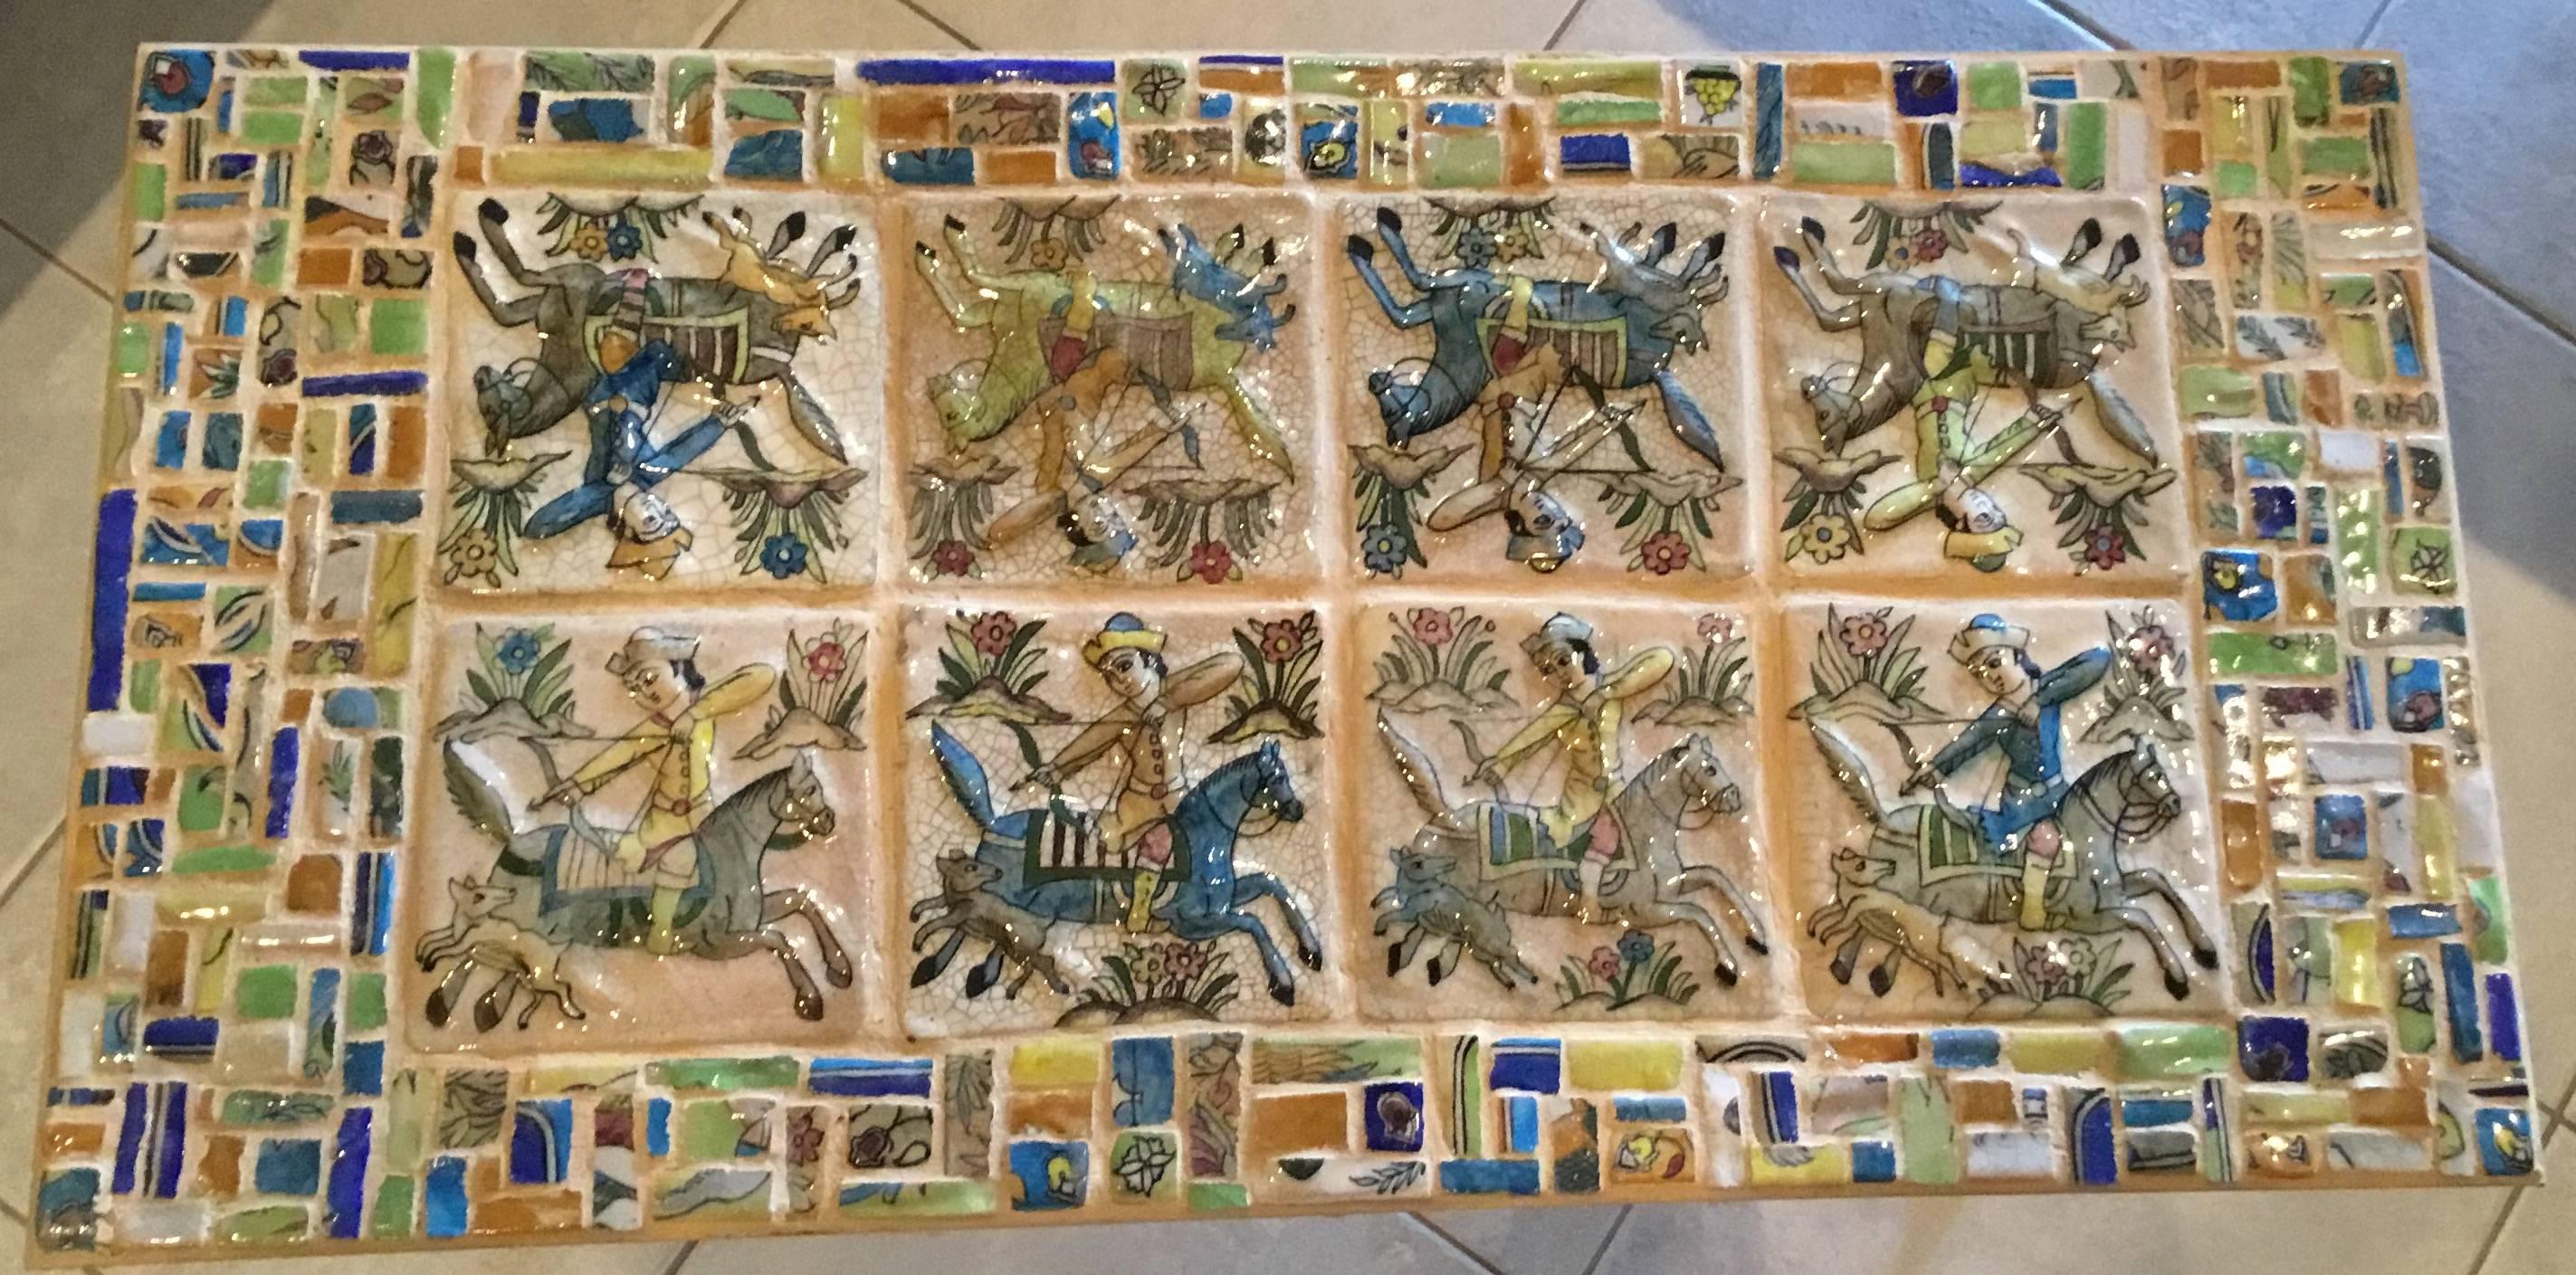 Magnifique table basse artistique faite d'une base en fer forgé à la main, avec un ensemble de huit pièces
vieux carreaux persans montrant une scène de chasse, le tout entouré d'un travail manuel coloré
mosaïque.
Le dessus est traité pour